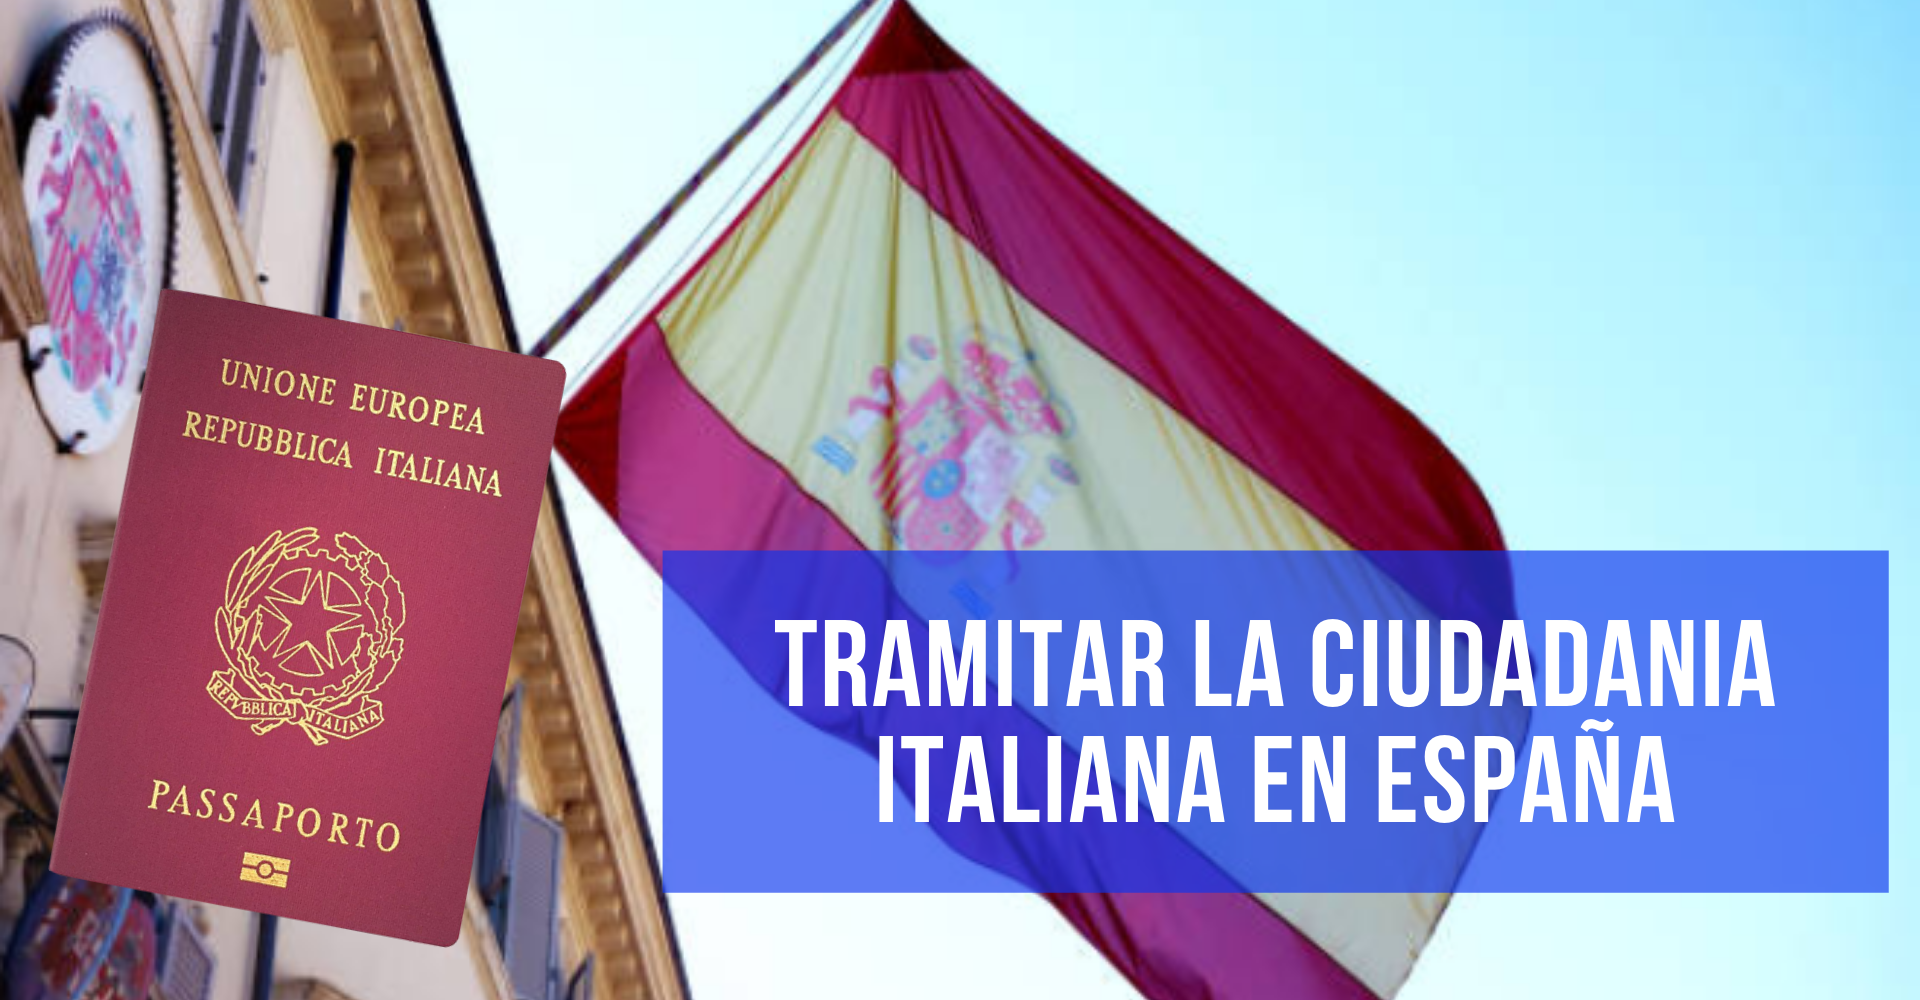 Puedo Tramitar La Ciudadania Italiana En Espana Guia 2020